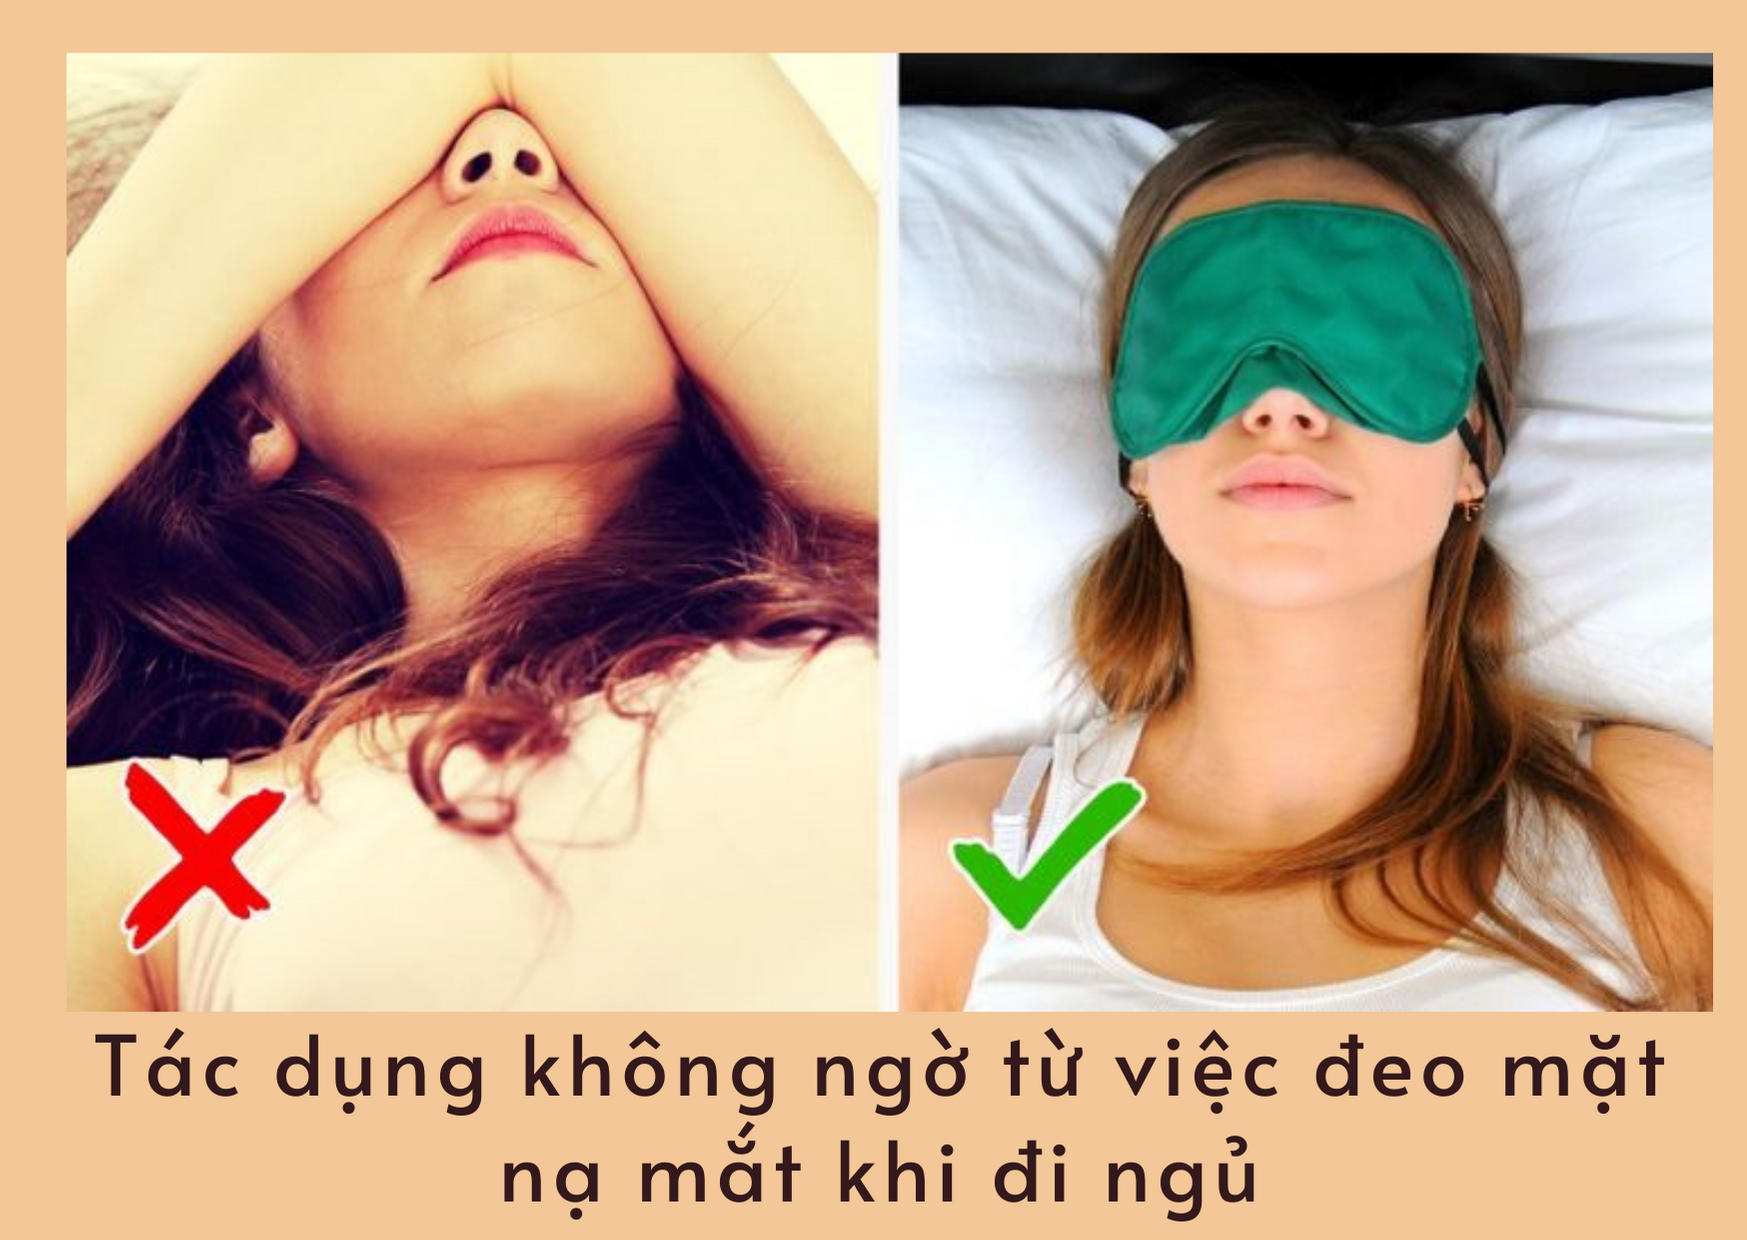 Tác dụng không ngờ từ việc đeo mặt nạ mắt khi đi ngủ.